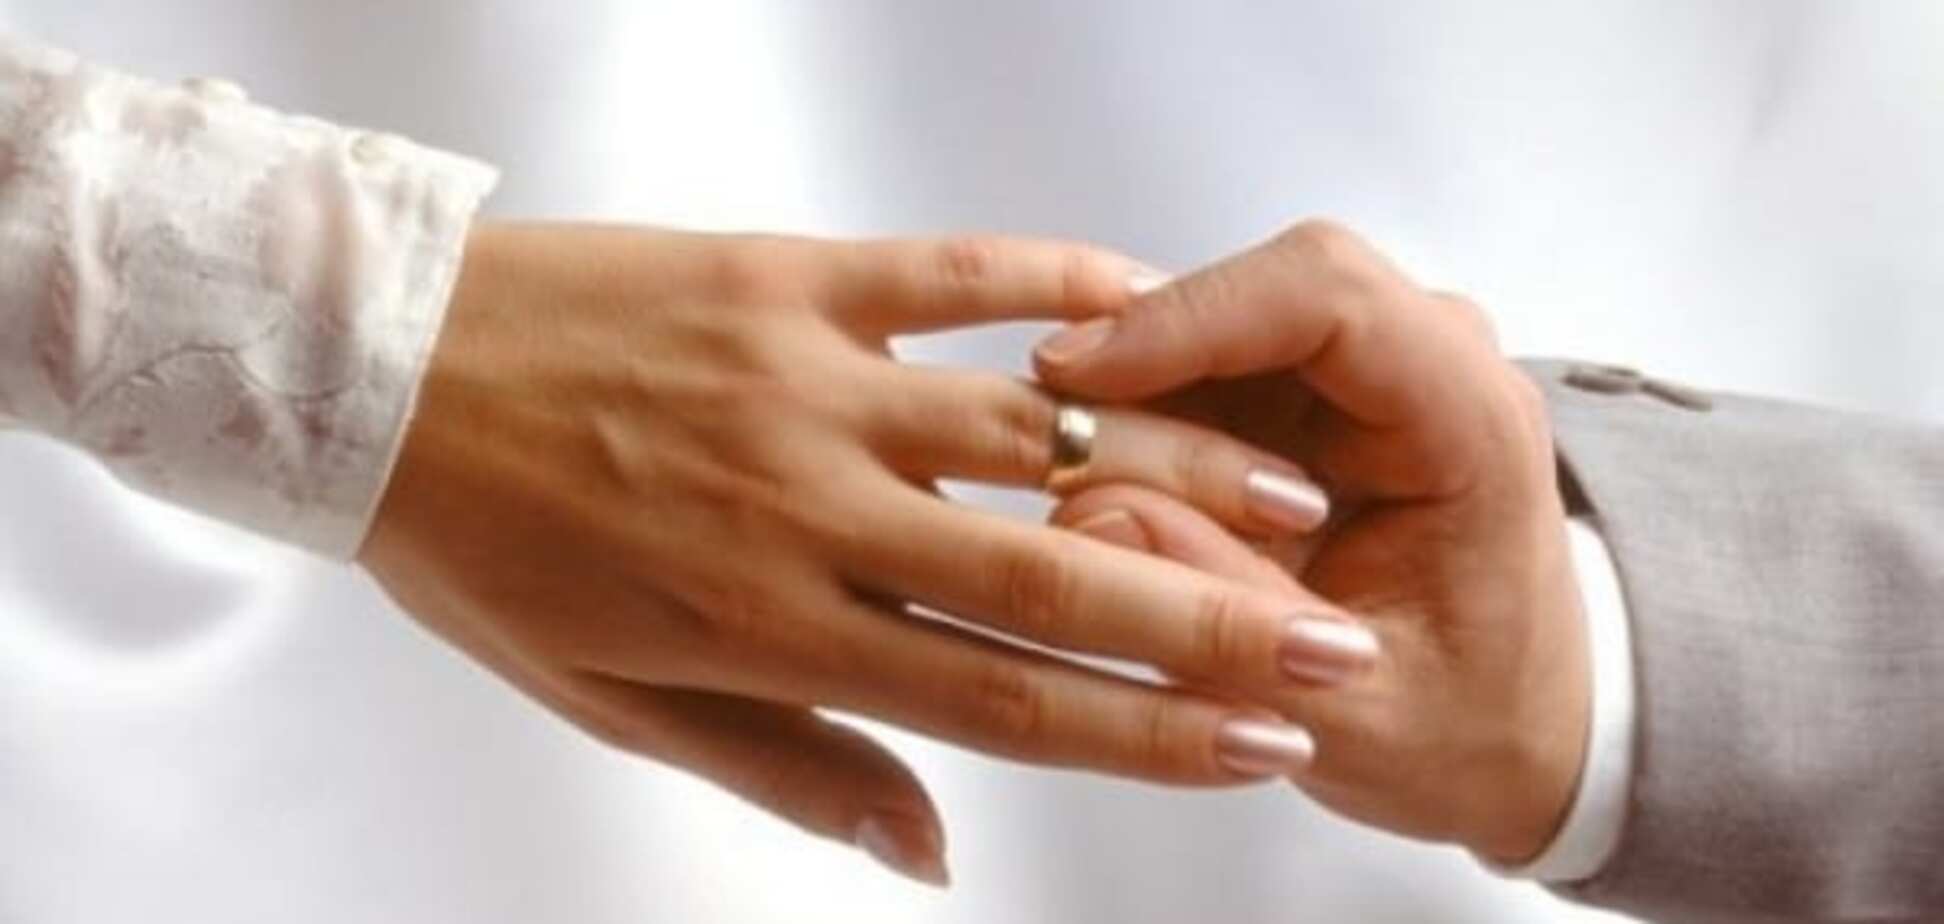 Врачи предупредили: обручальные кольца могут привести к ампутации пальцев